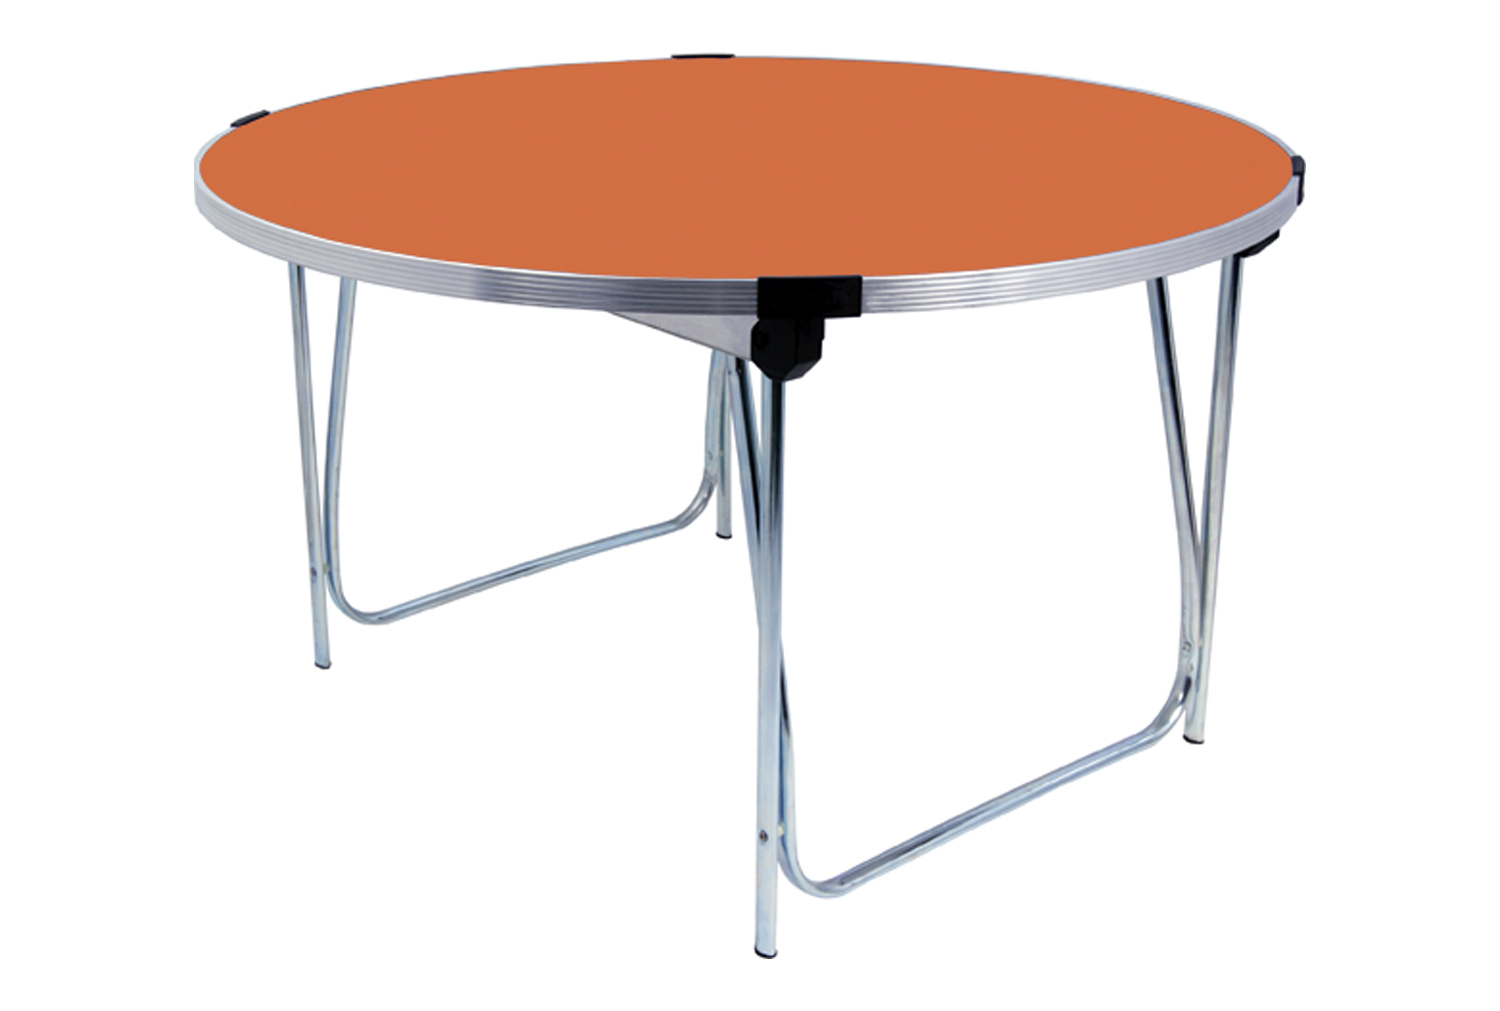 Gopak Round Folding Table, Junior - 122diax64h (cm), Orange